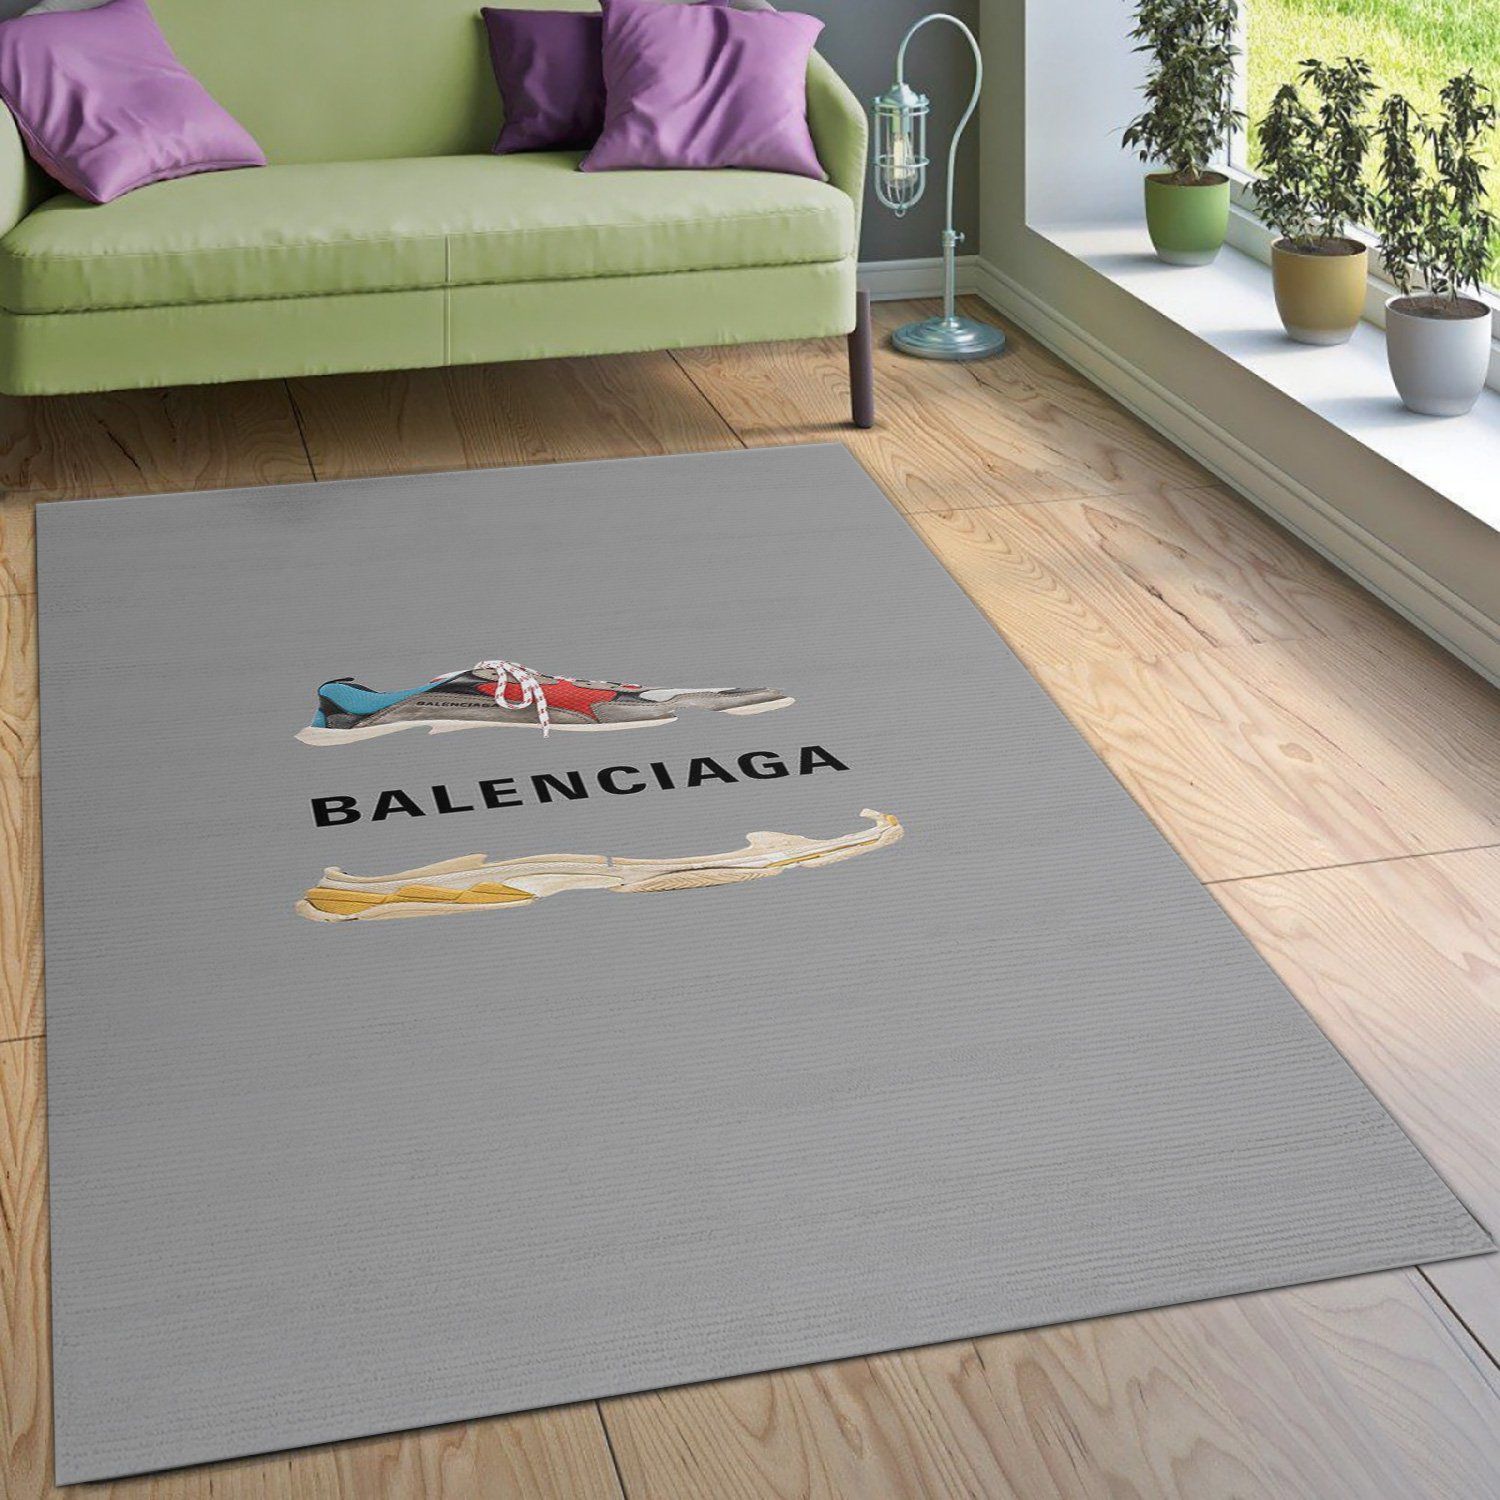 Balenciaga Sneaker Rectangle Rug Door Mat Luxury Fashion Brand Area Carpet Home Decor